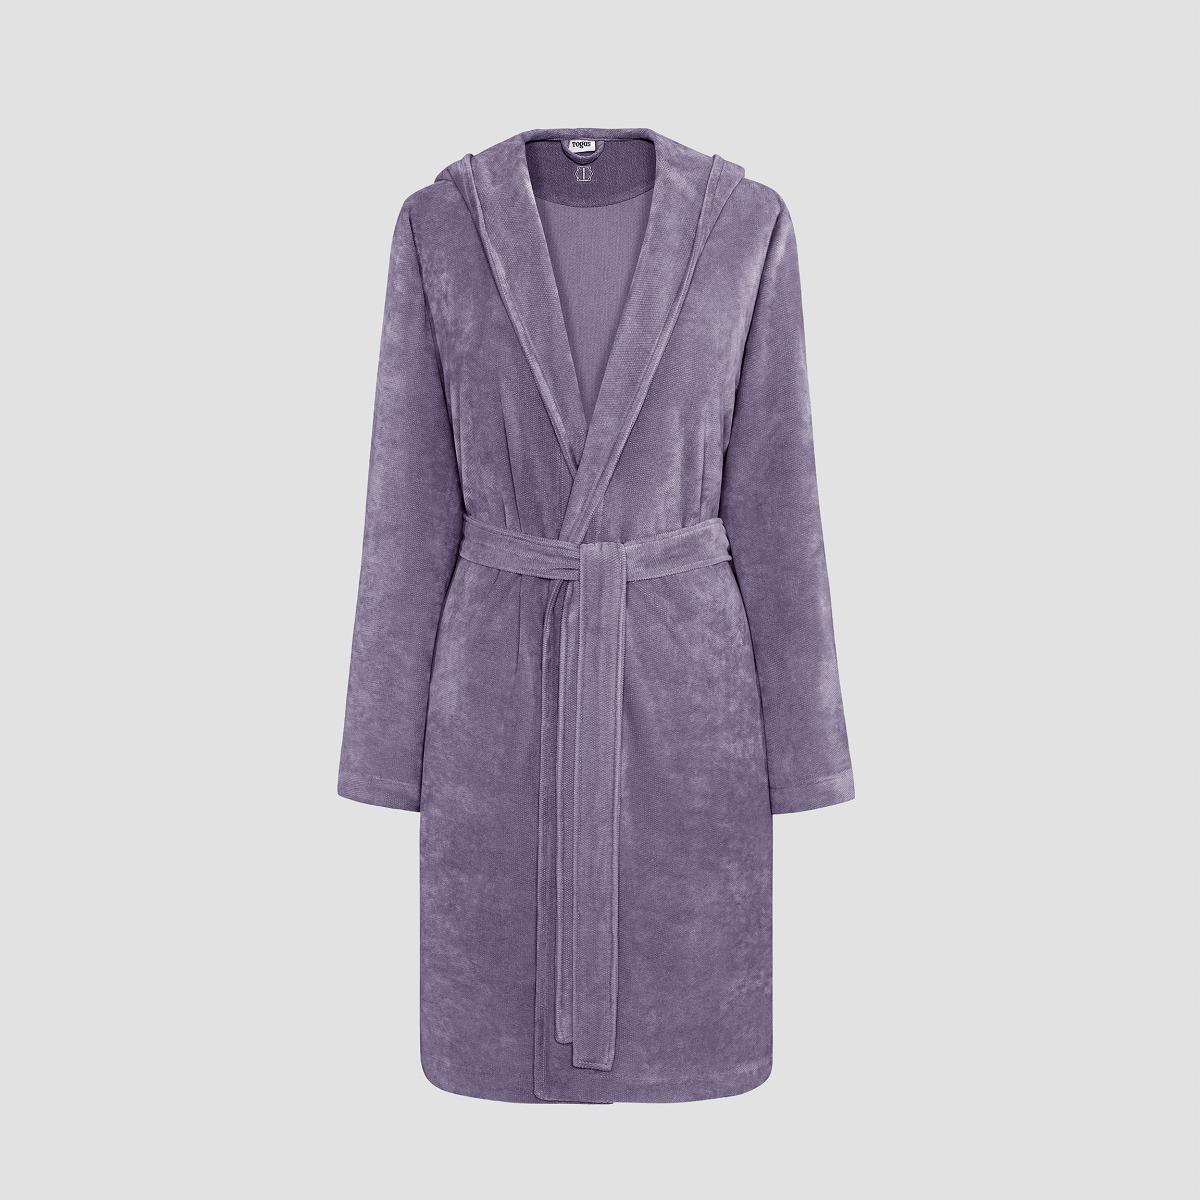 Халат Togas Талия фиолетовый XL(50) жен халат ромашки фиолетовый р 56